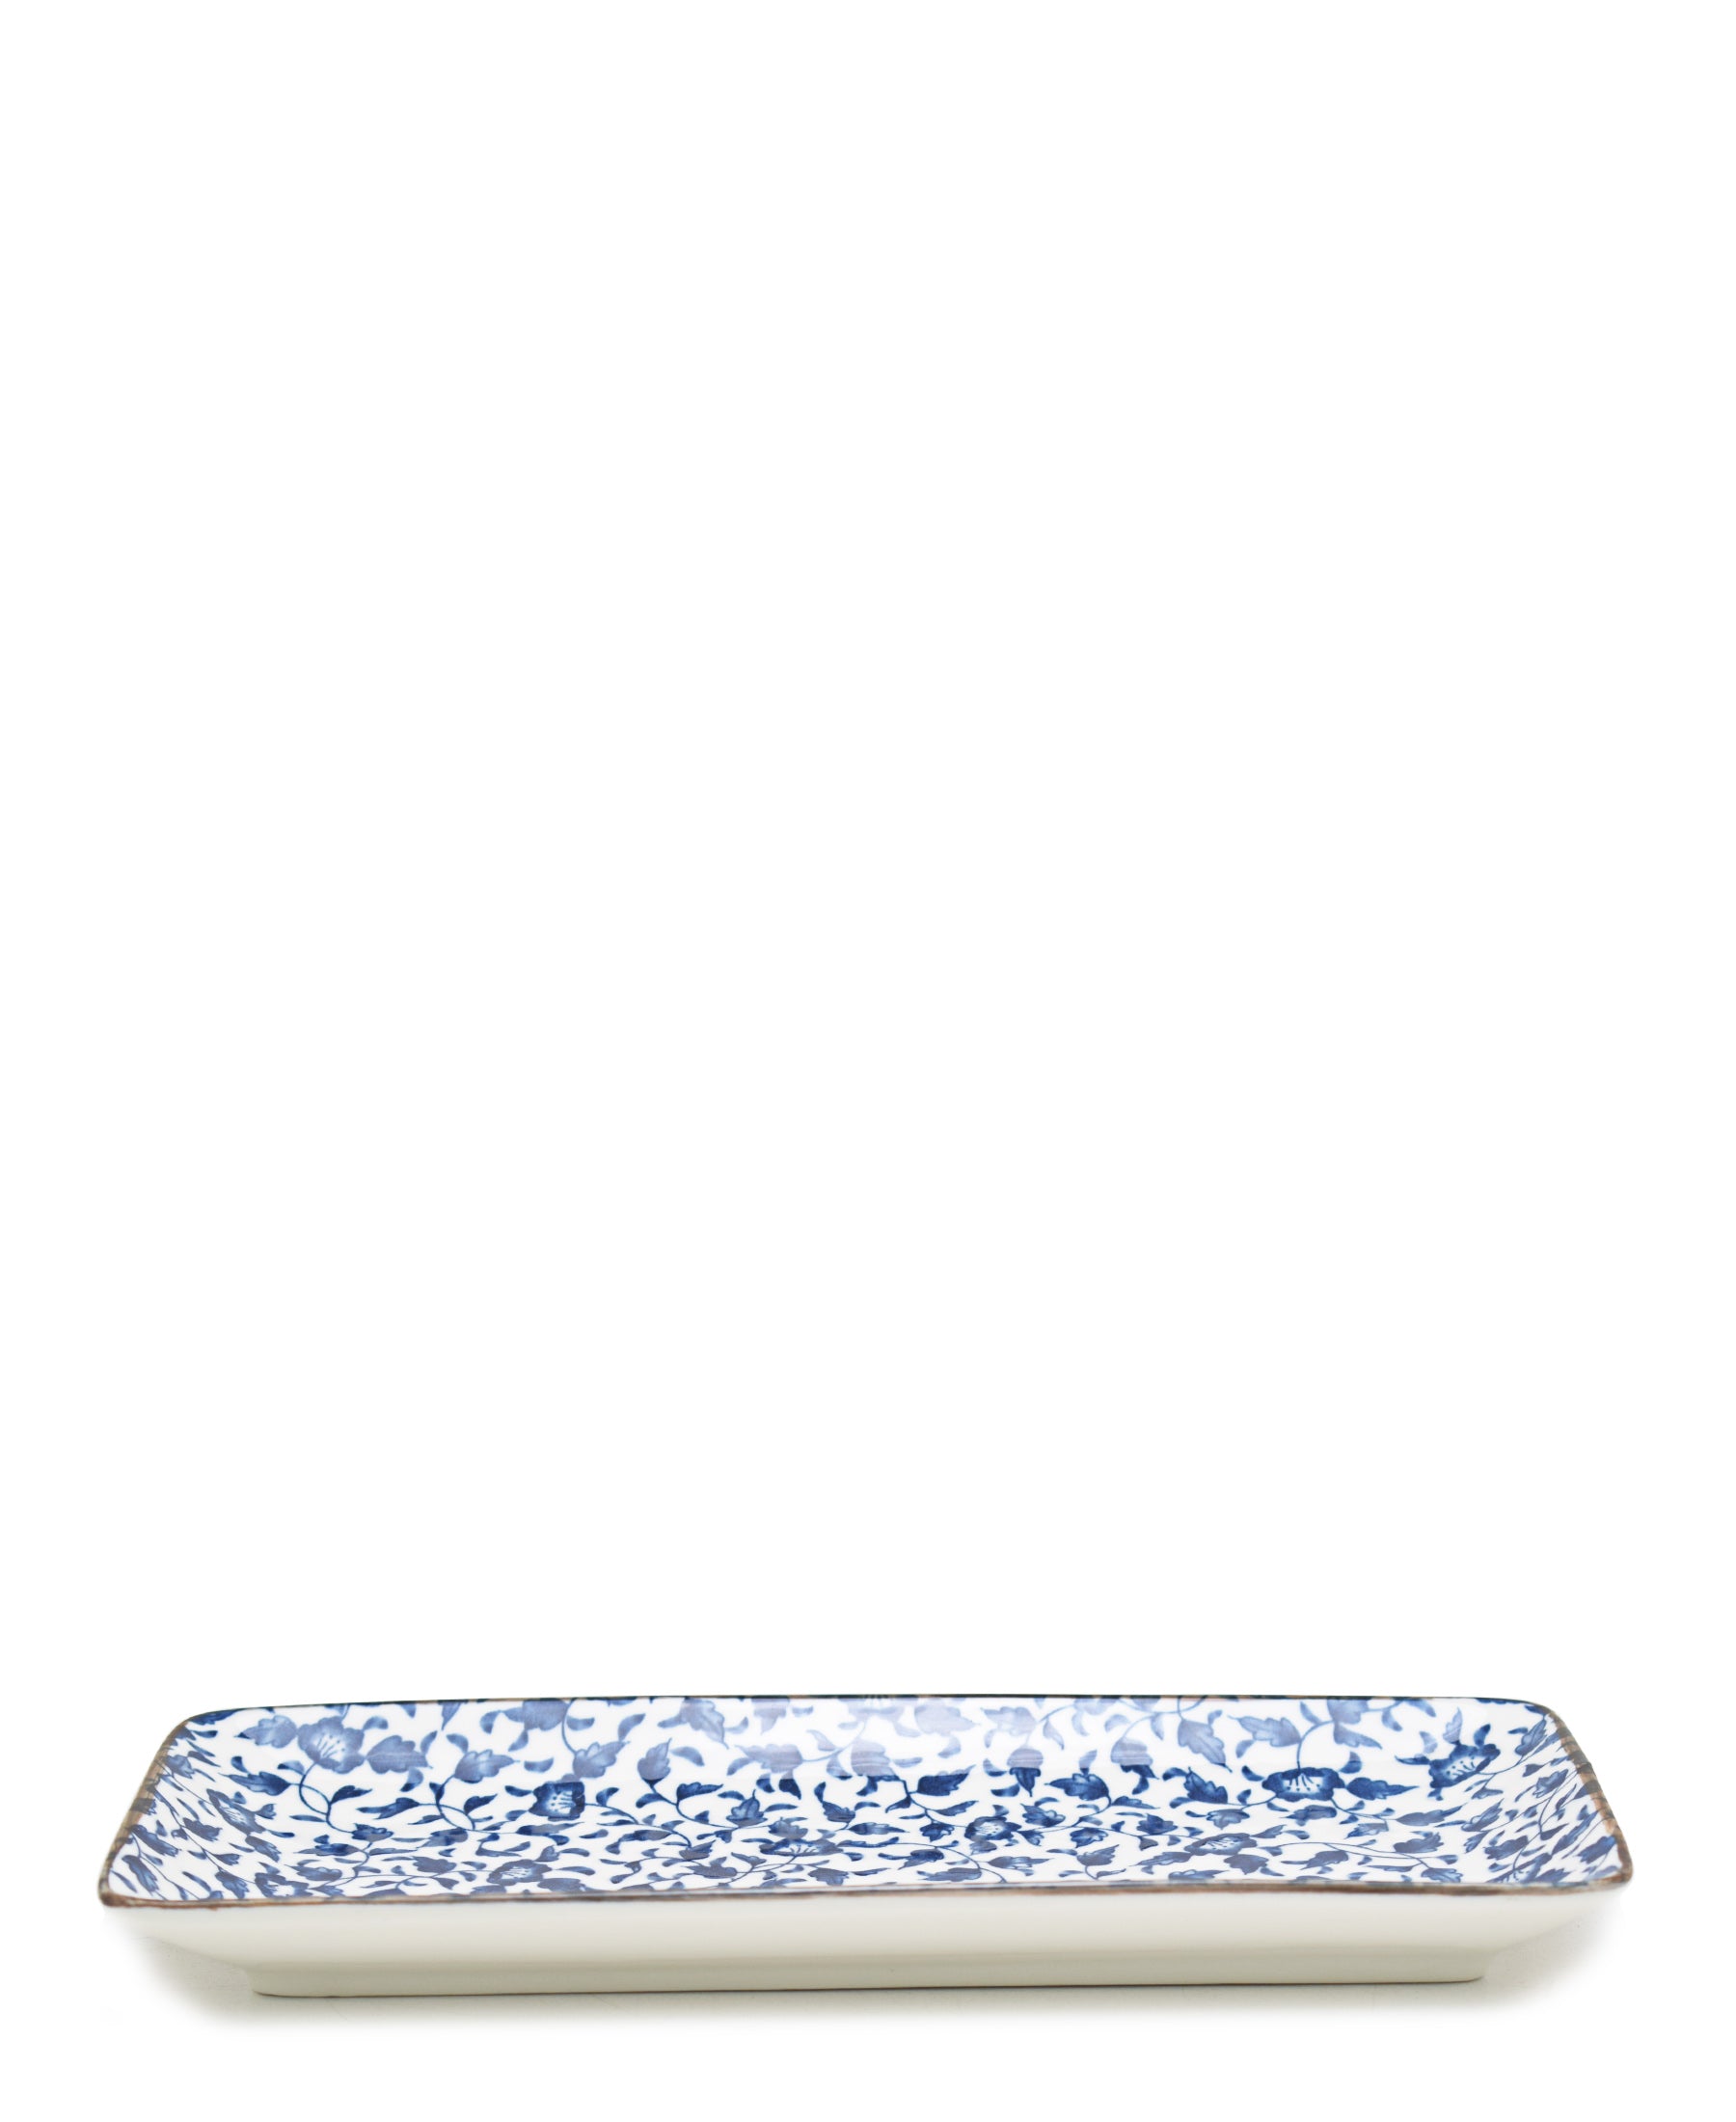 Shanghai Plate 10cm - White & Blue